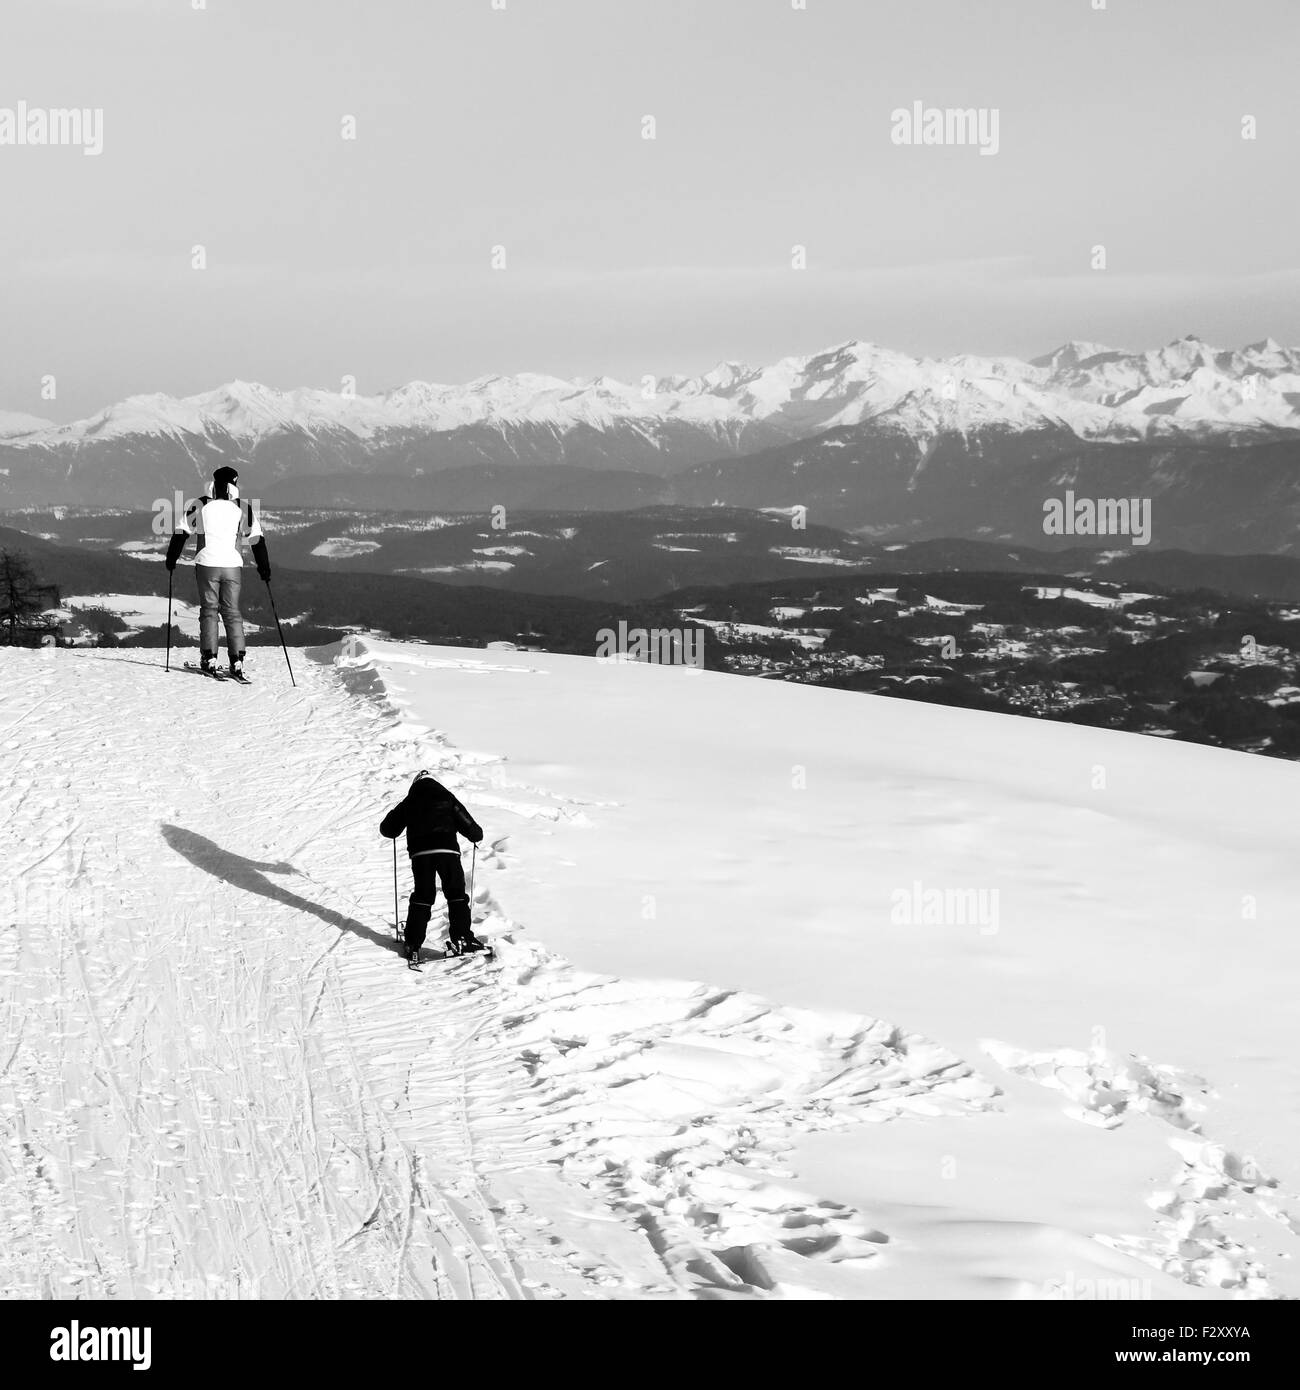 ORTISEI, ITALIE - CIRCA DÉCEMBRE 2012 : Père et fils le ski sur les pentes enneigées des Alpes. Banque D'Images